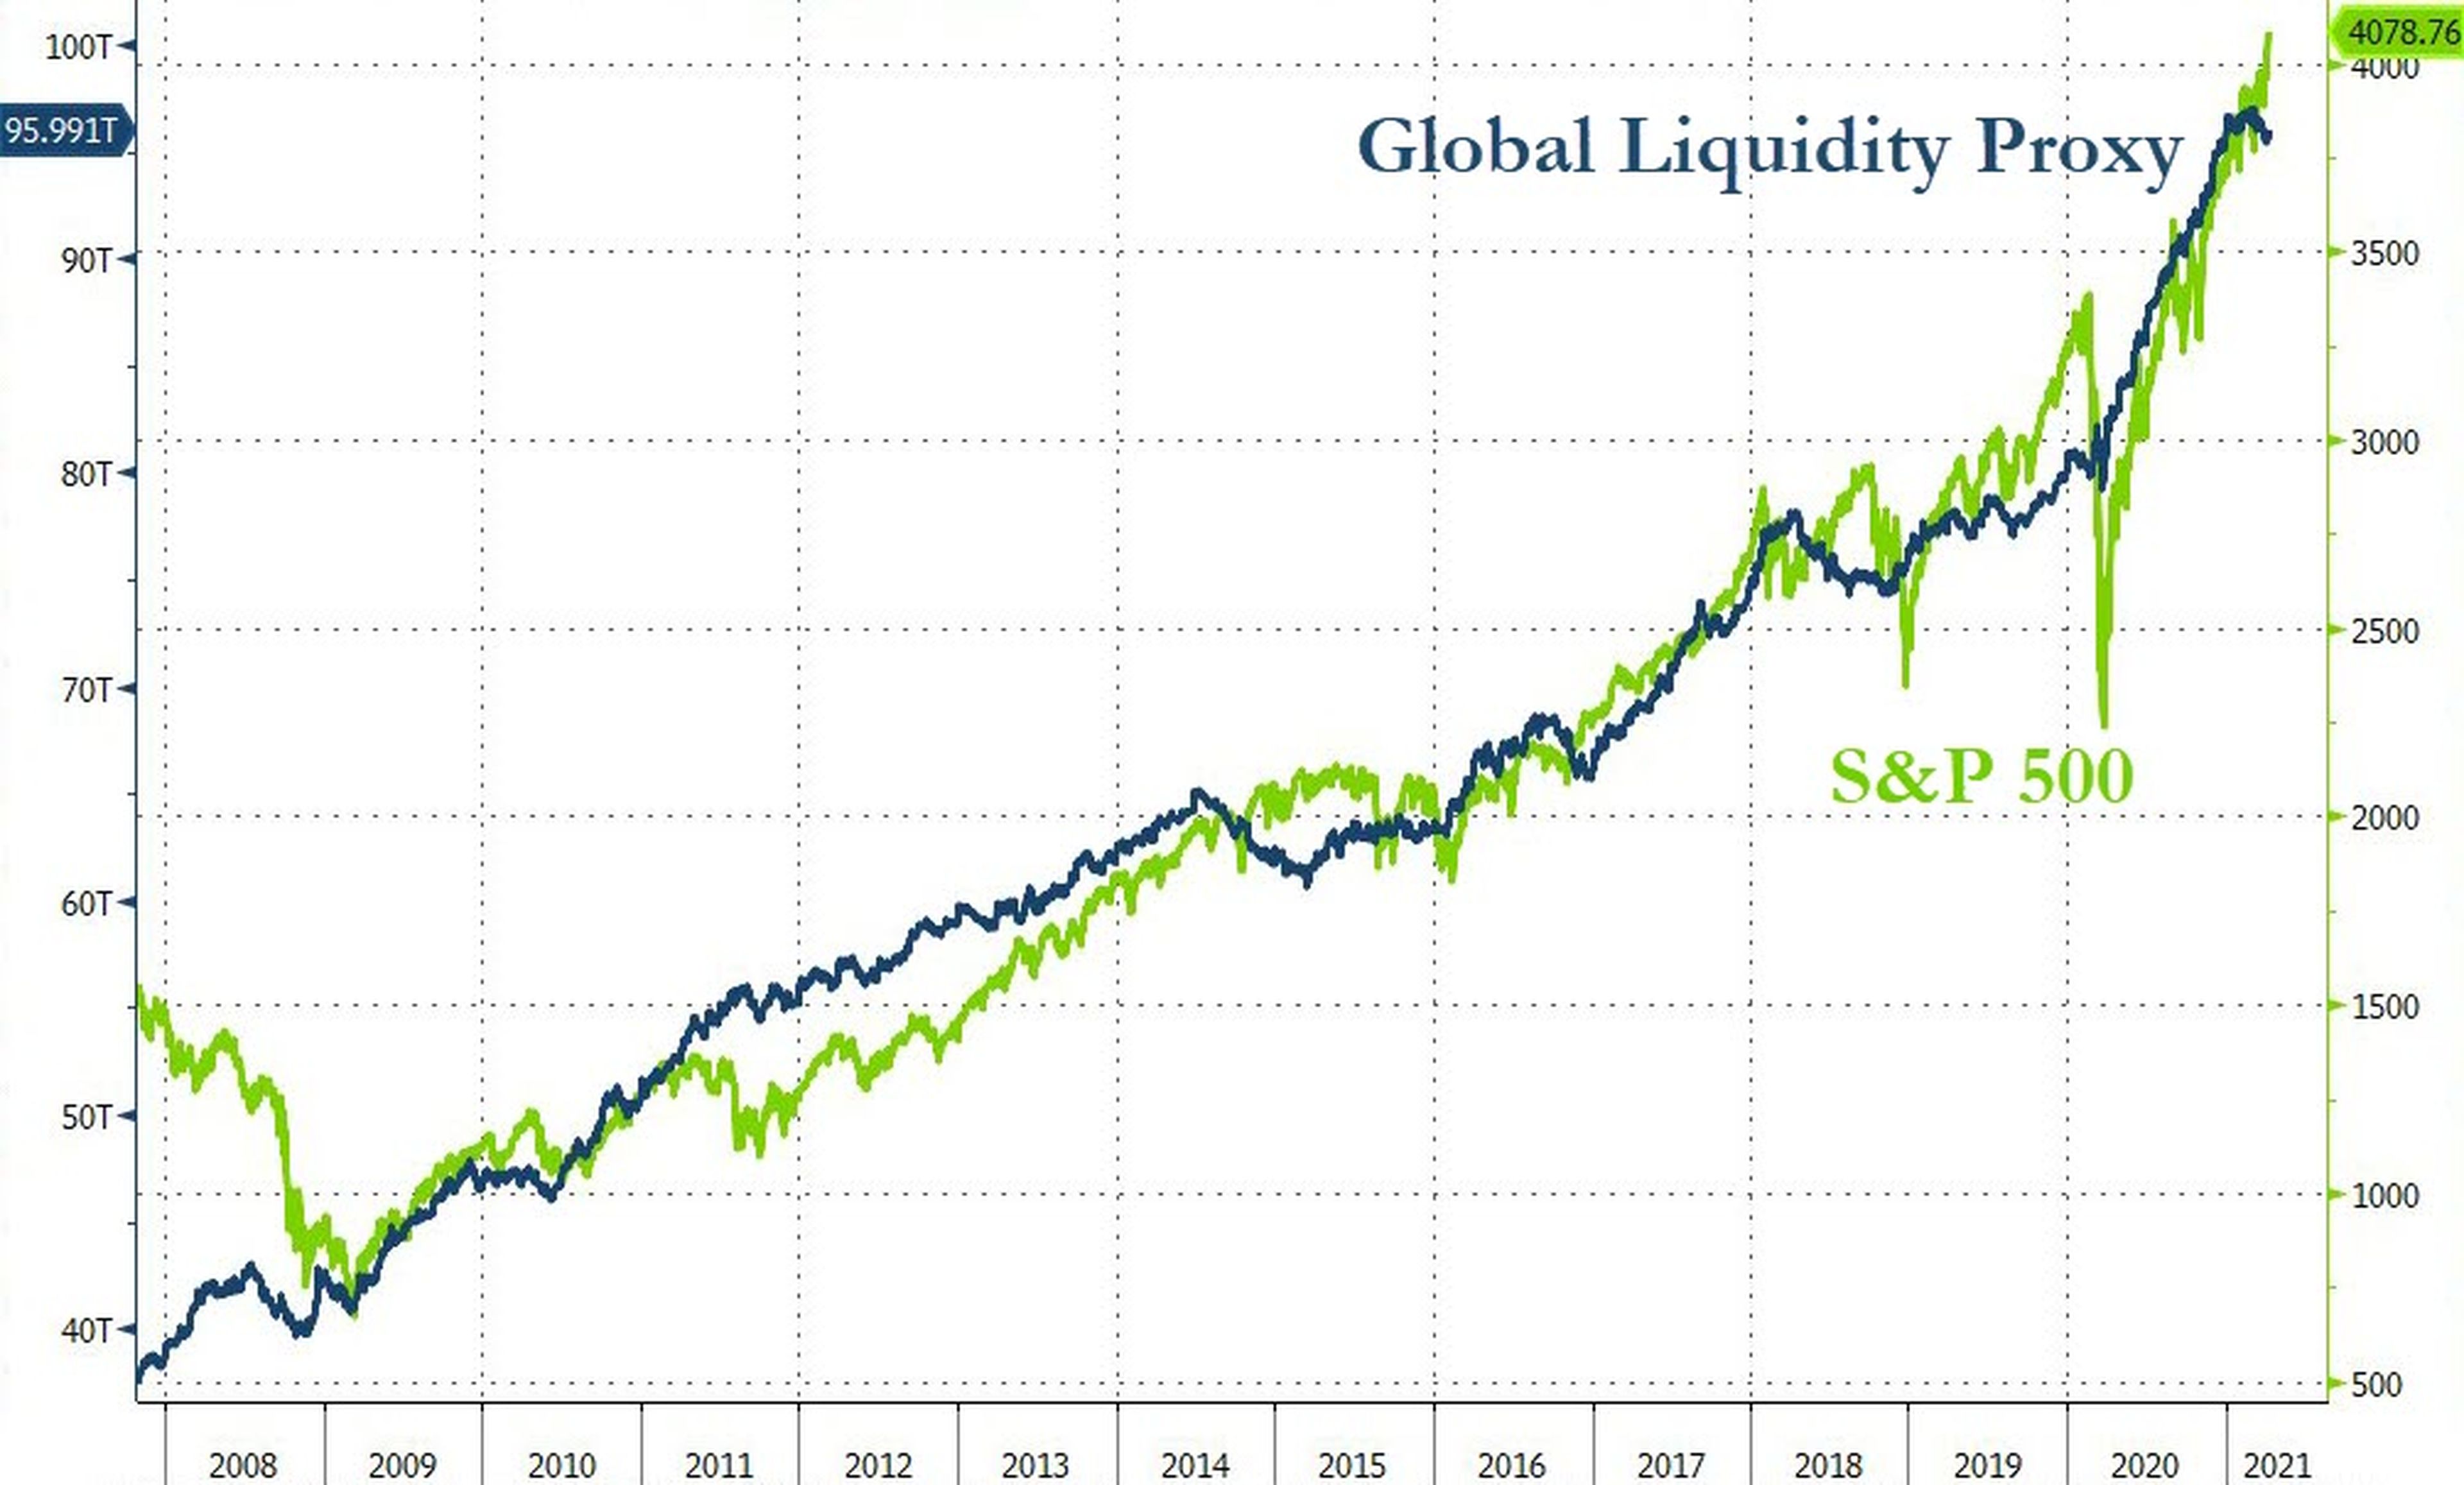 Liquidez global correlacionada con el comportamiento del S&P 500